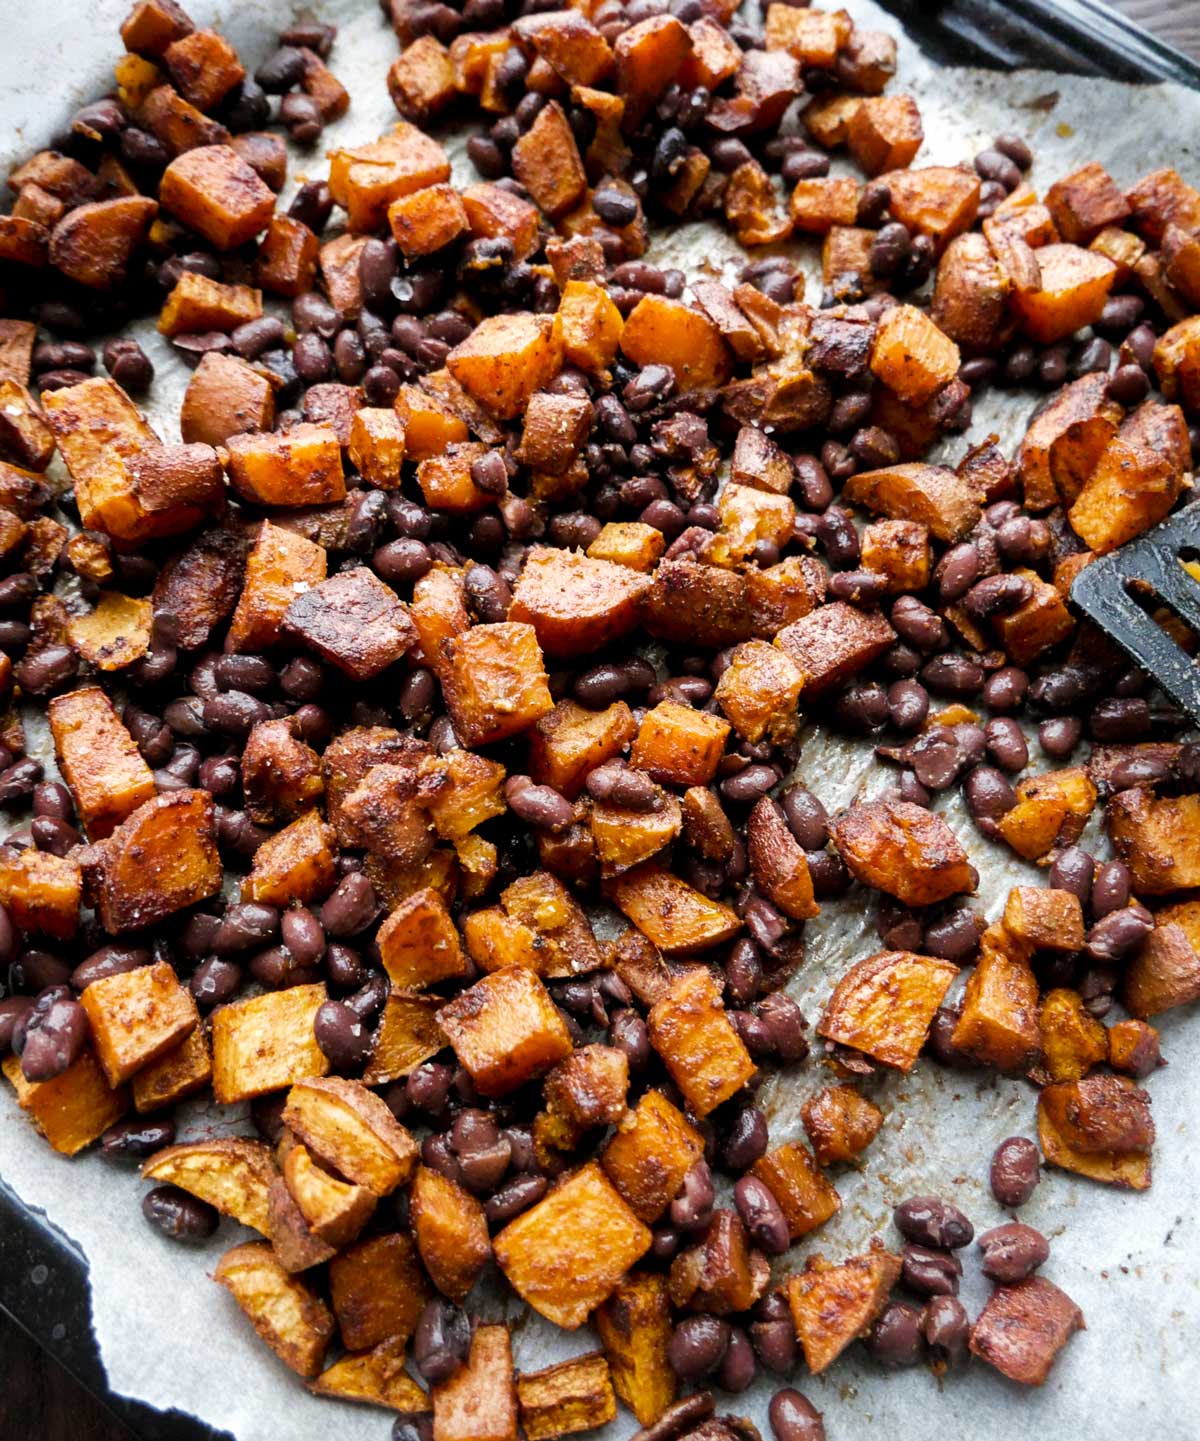 bagte søde kartofler og sorte bønner i ovnen